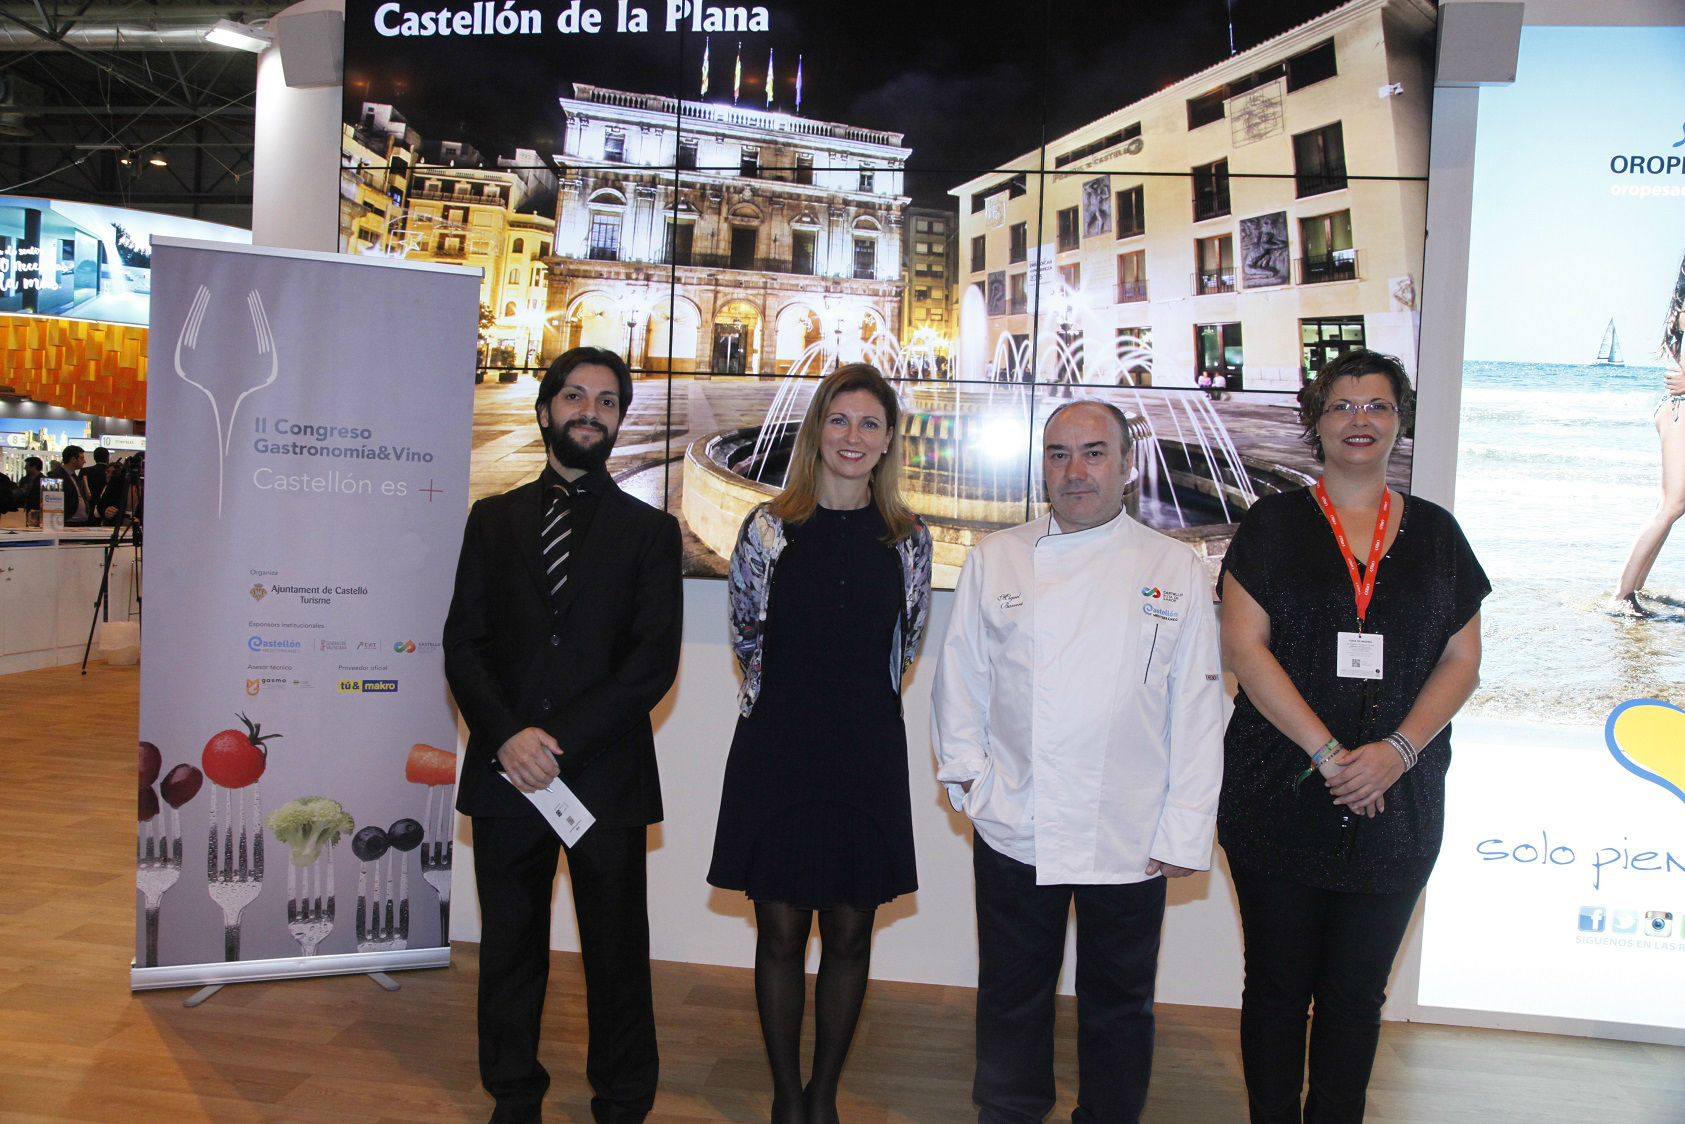 Cinco chefs con Estrella Michelín participarán en el II Congreso Gastronomía&Vino